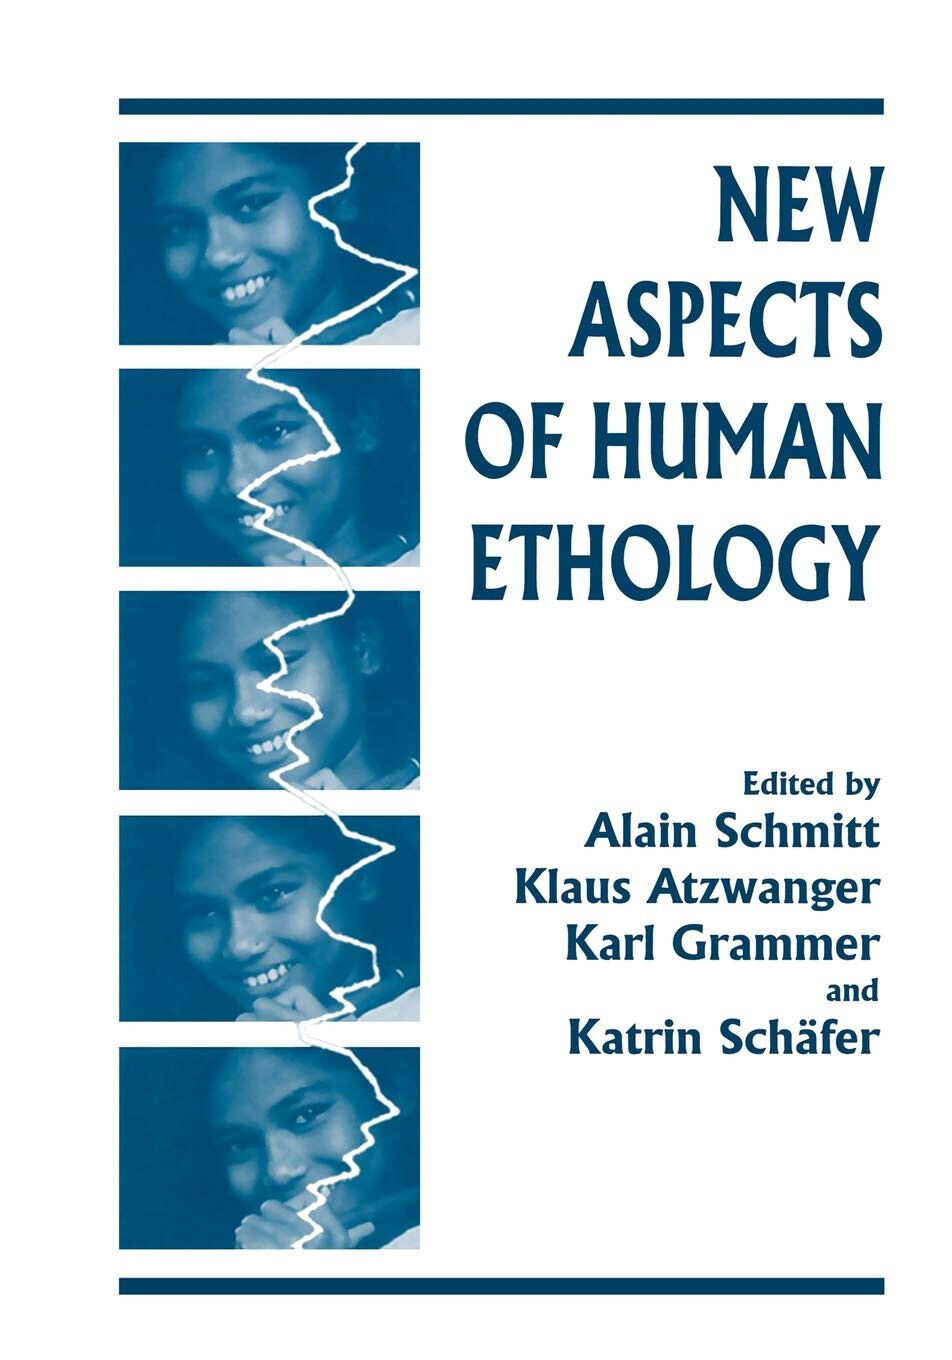 New Aspects of Human Ethology - Klaus Atzwanger - Springer, 2013 libro usato